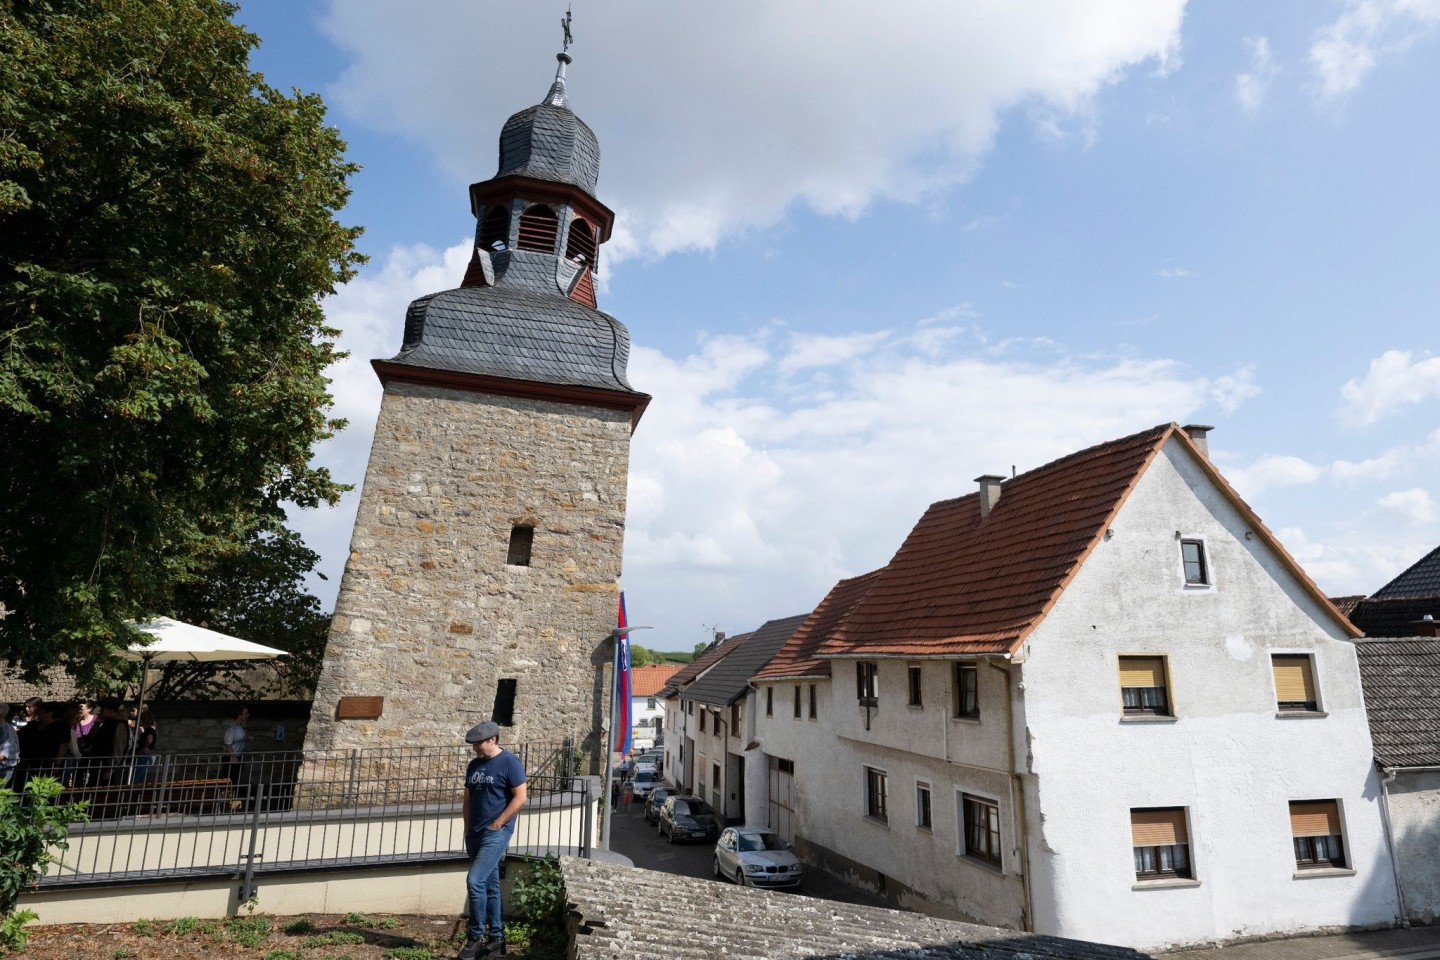 Durch die Neigung von 5,4277 Grad gilt der ehemalige Wehrturm der kleinen Gemeinde Gau-Weinheim als «schiefster Turm der Welt».